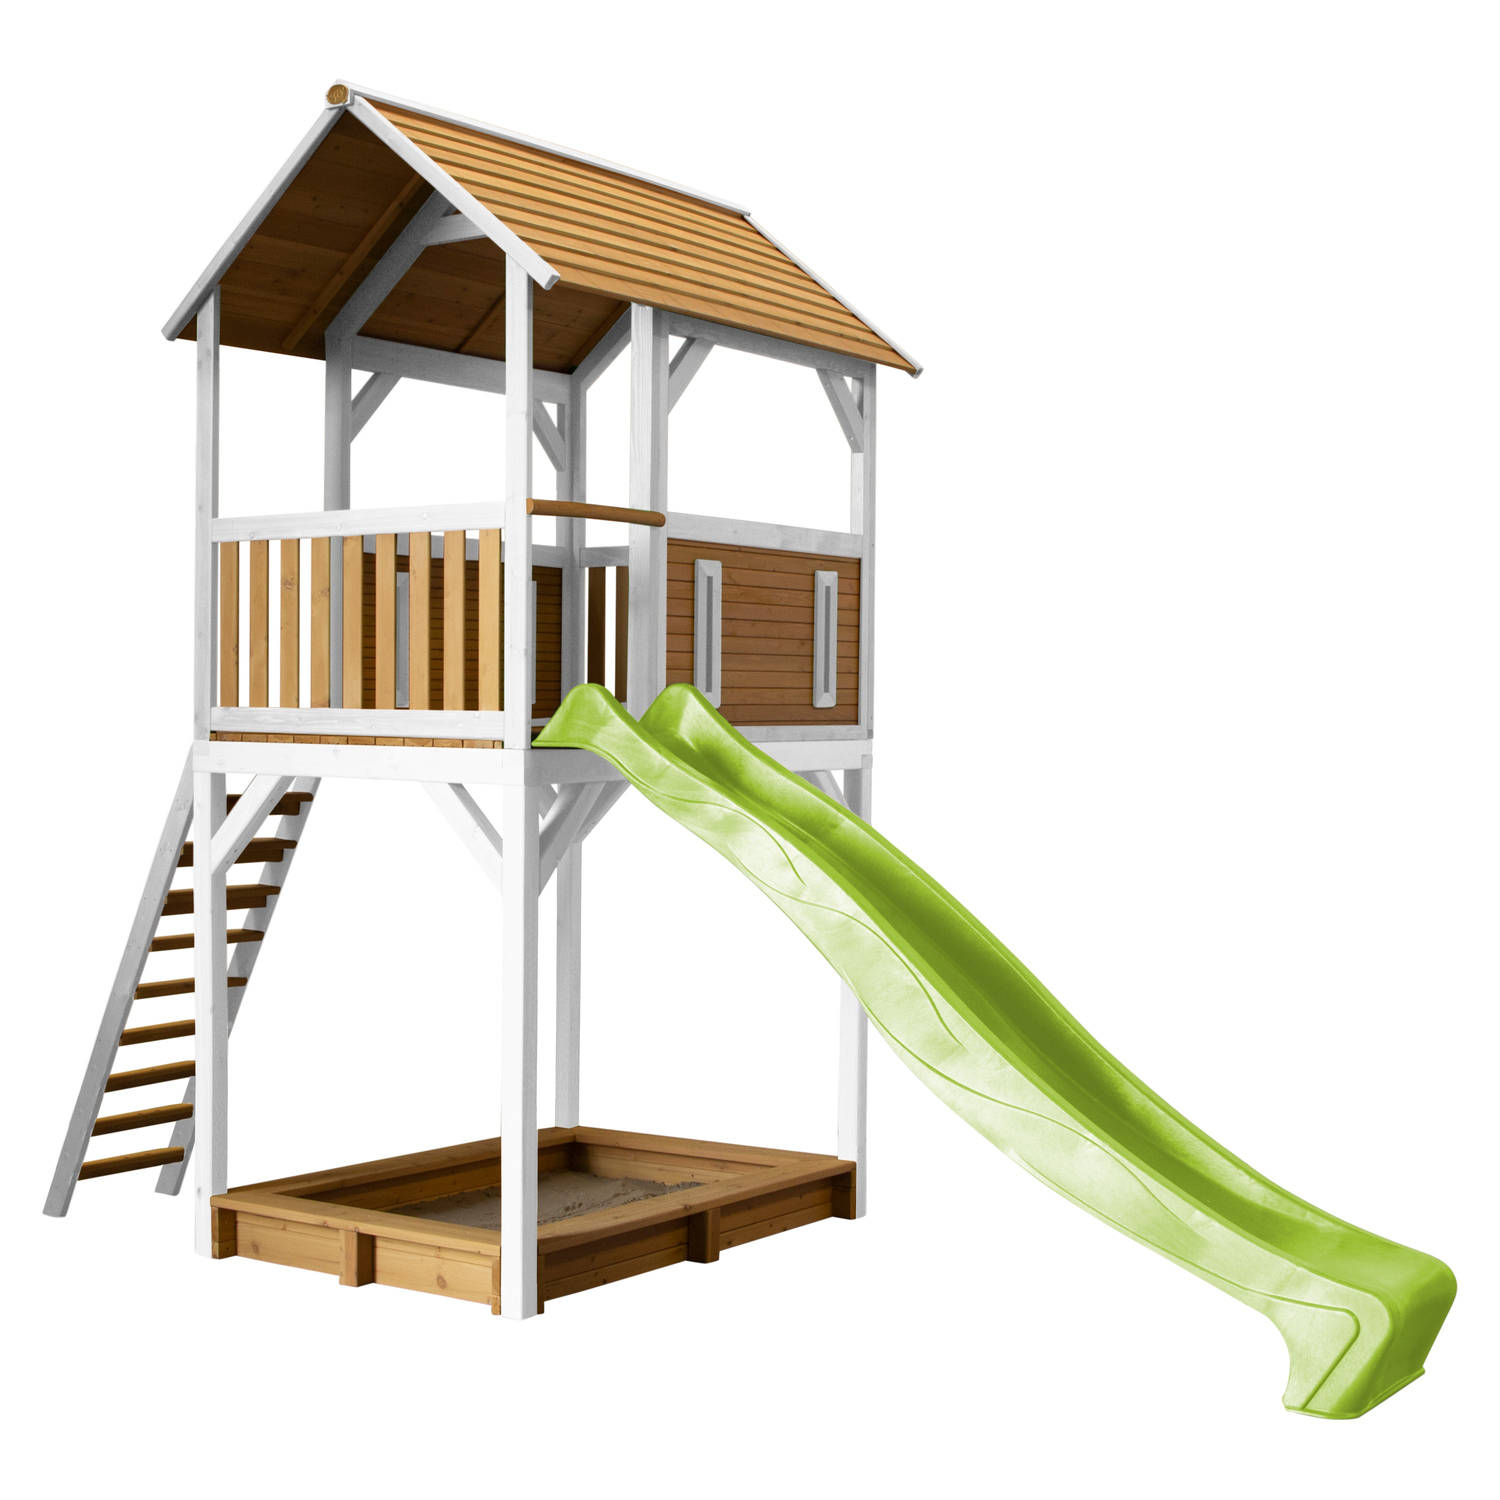 AXI Dory Speelhuis op palen, zandbak & limoen groene glijbaan Speelhuisje voor de tuin / buiten in bruin & wit van FSC